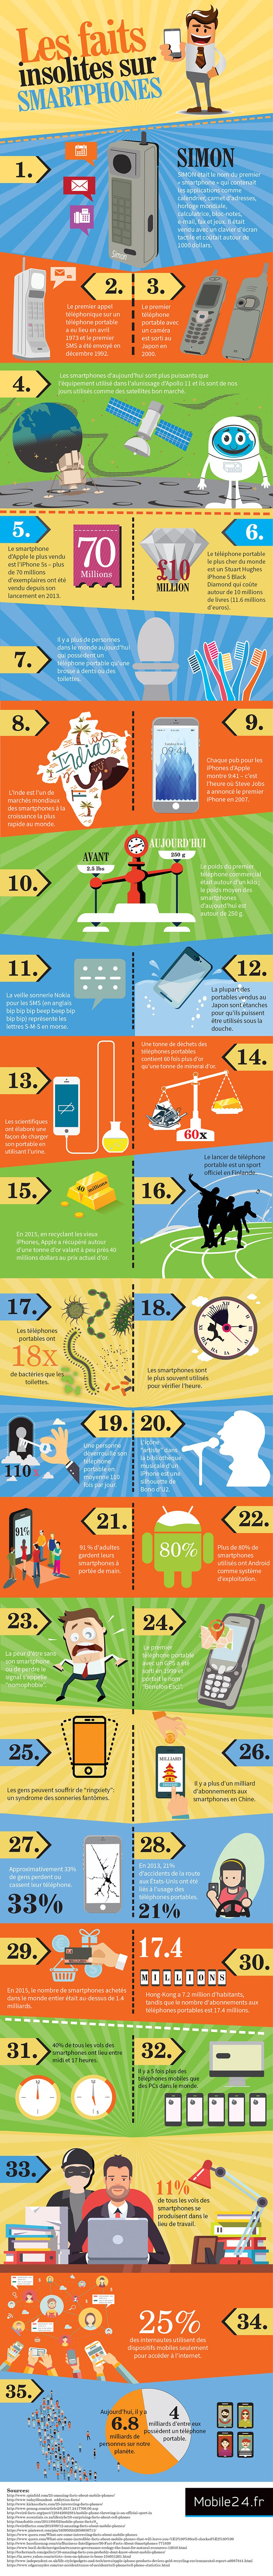 Infographie : 35 faits insolites liés aux smarphones